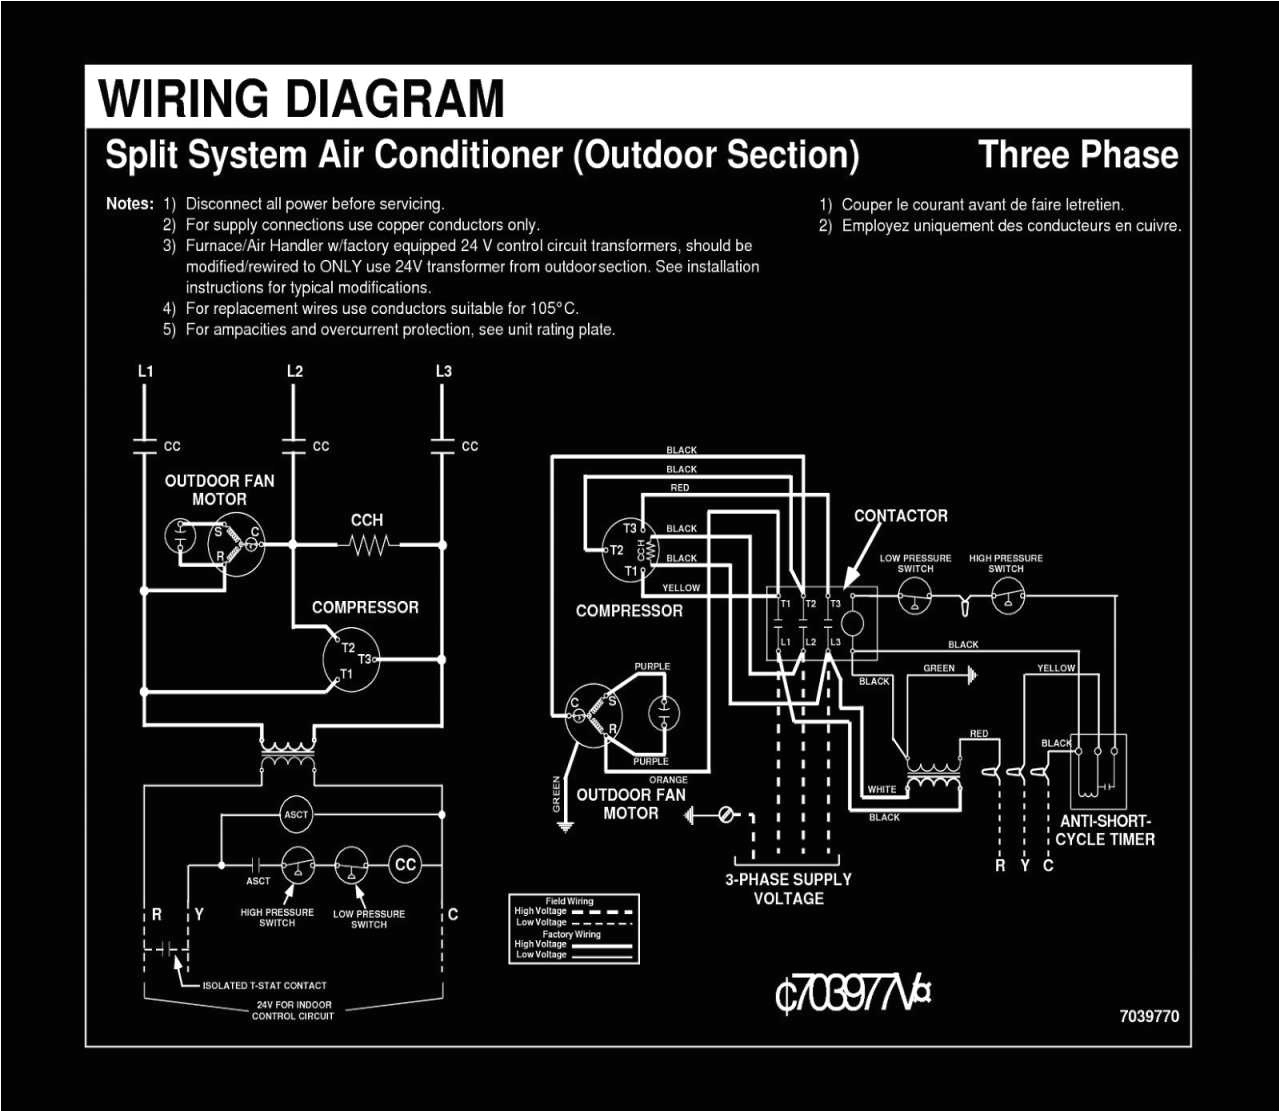 vav wiring diagram wiring diagram hvac wiring diagrams schematics rh diventare co hvac electrical wiring diagrams trane hvac wiring diagrams